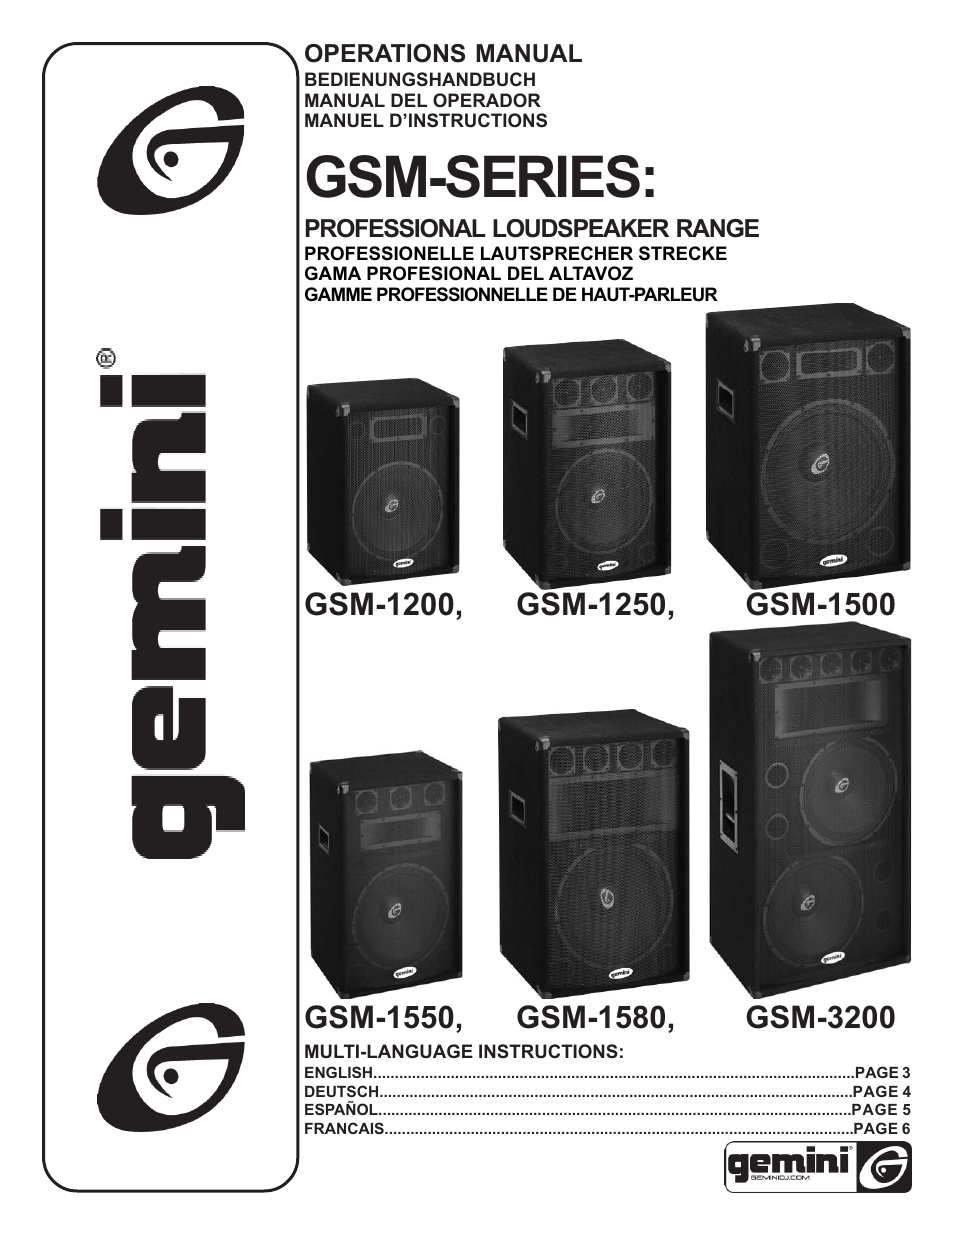 GSM-1580